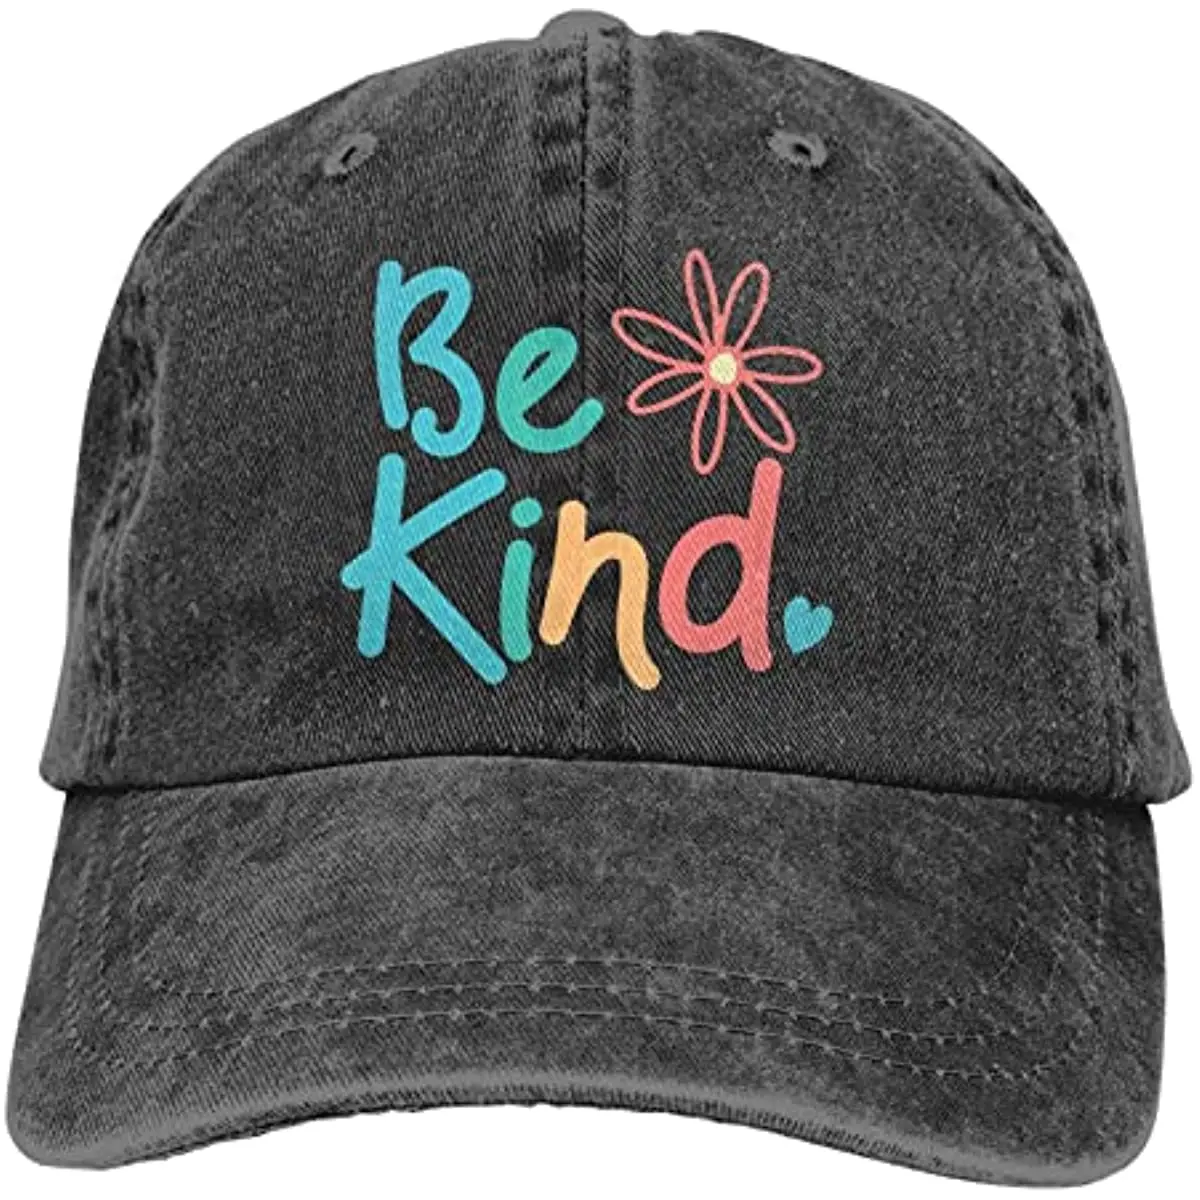 

Be Kind черная бейсболка Регулируемая винтажная Низкопрофильная джинсовая шапка для женщин мужчин Снэпбэк четыре сезона для взрослых унисекс